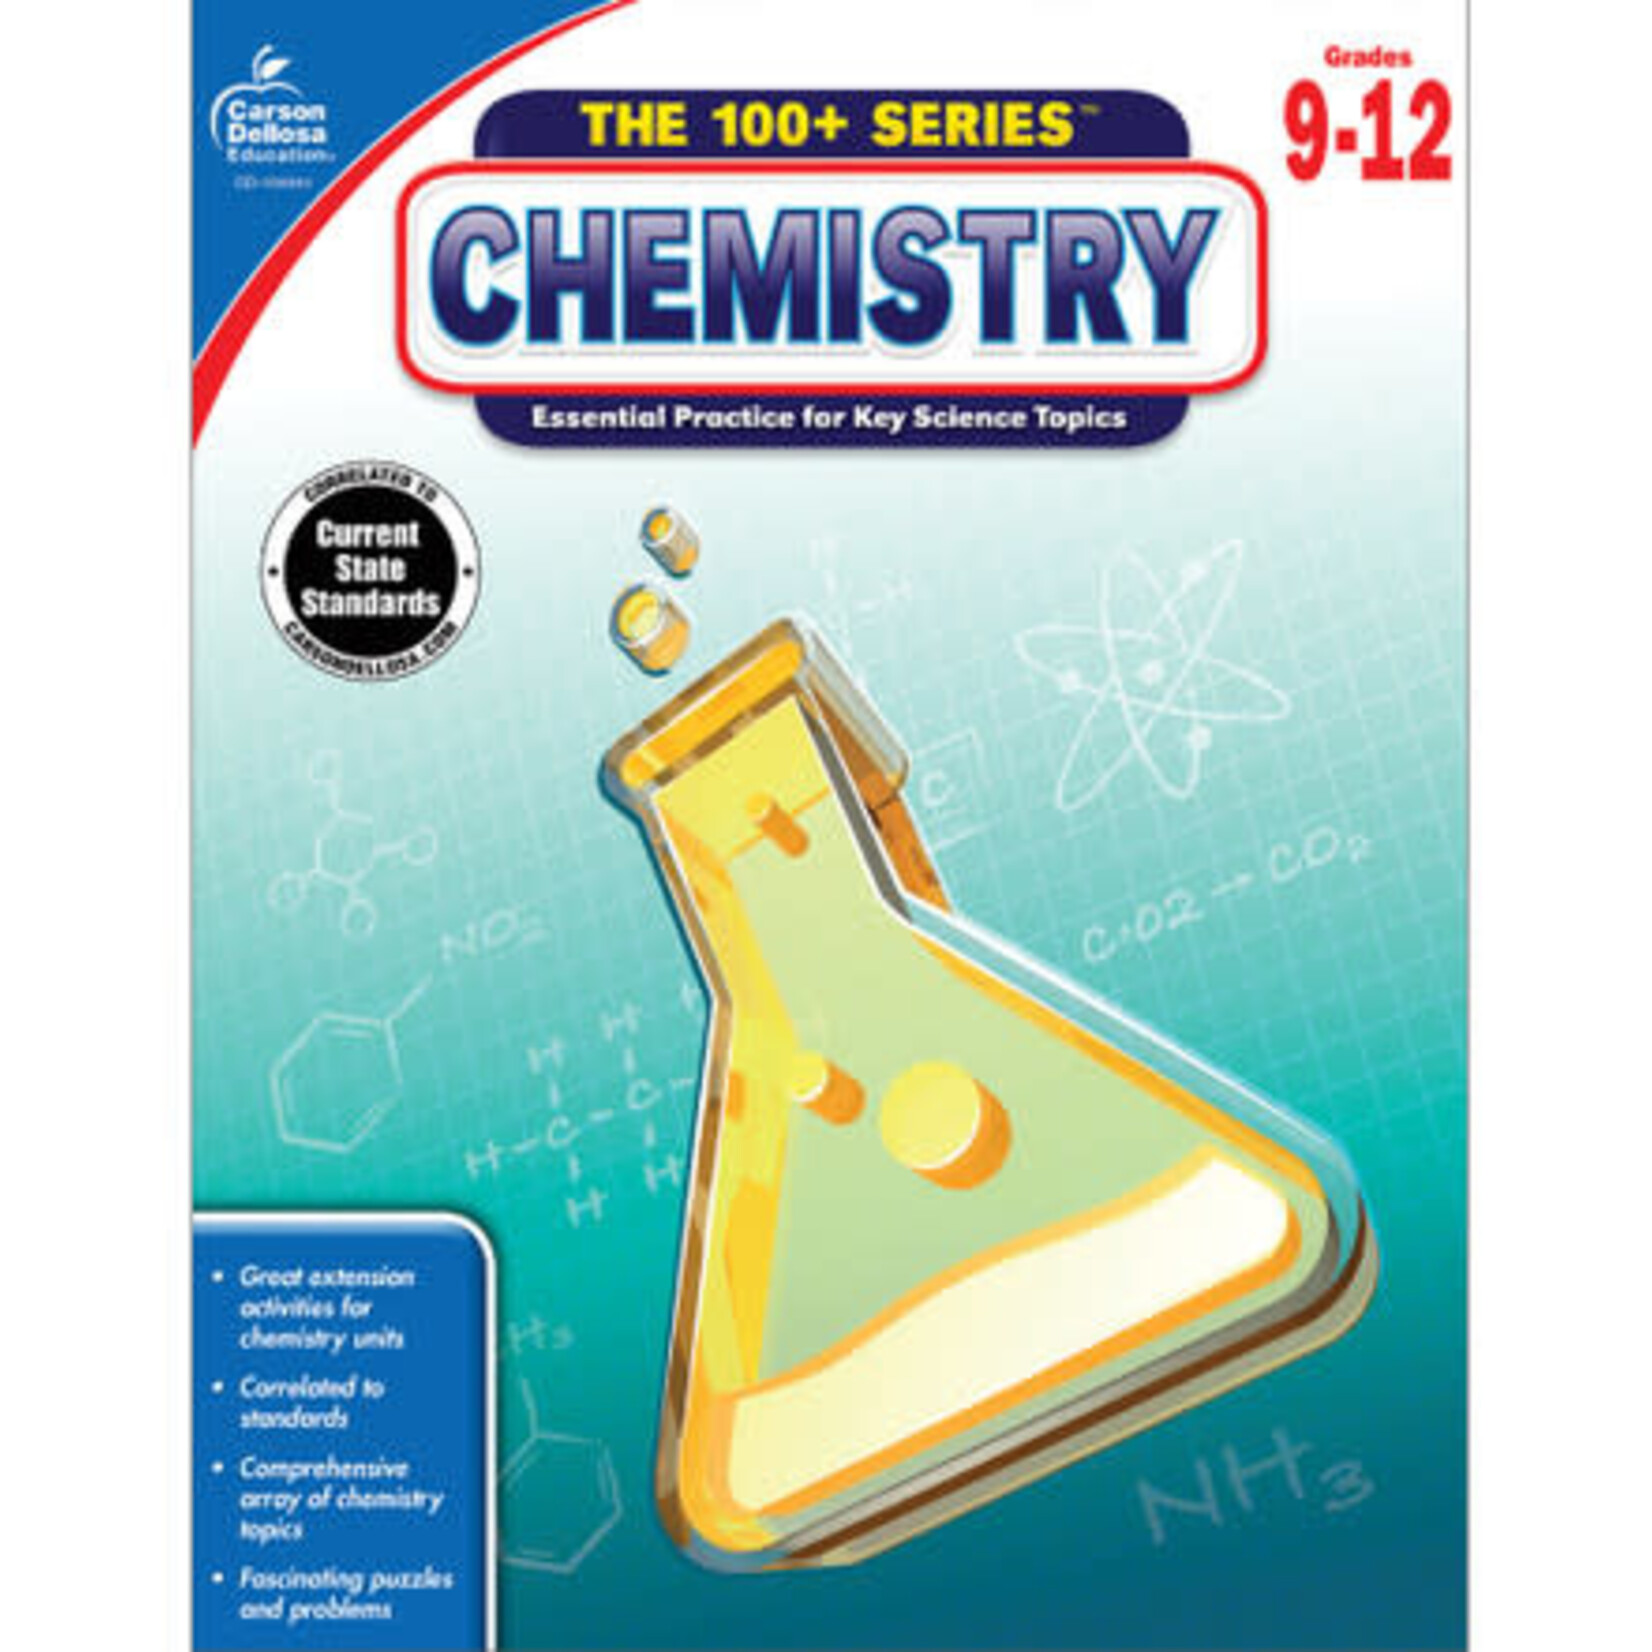 CARSON DELLOSA PUBLISHING CO Chemistry Workbook Grade 9-12 Paperback